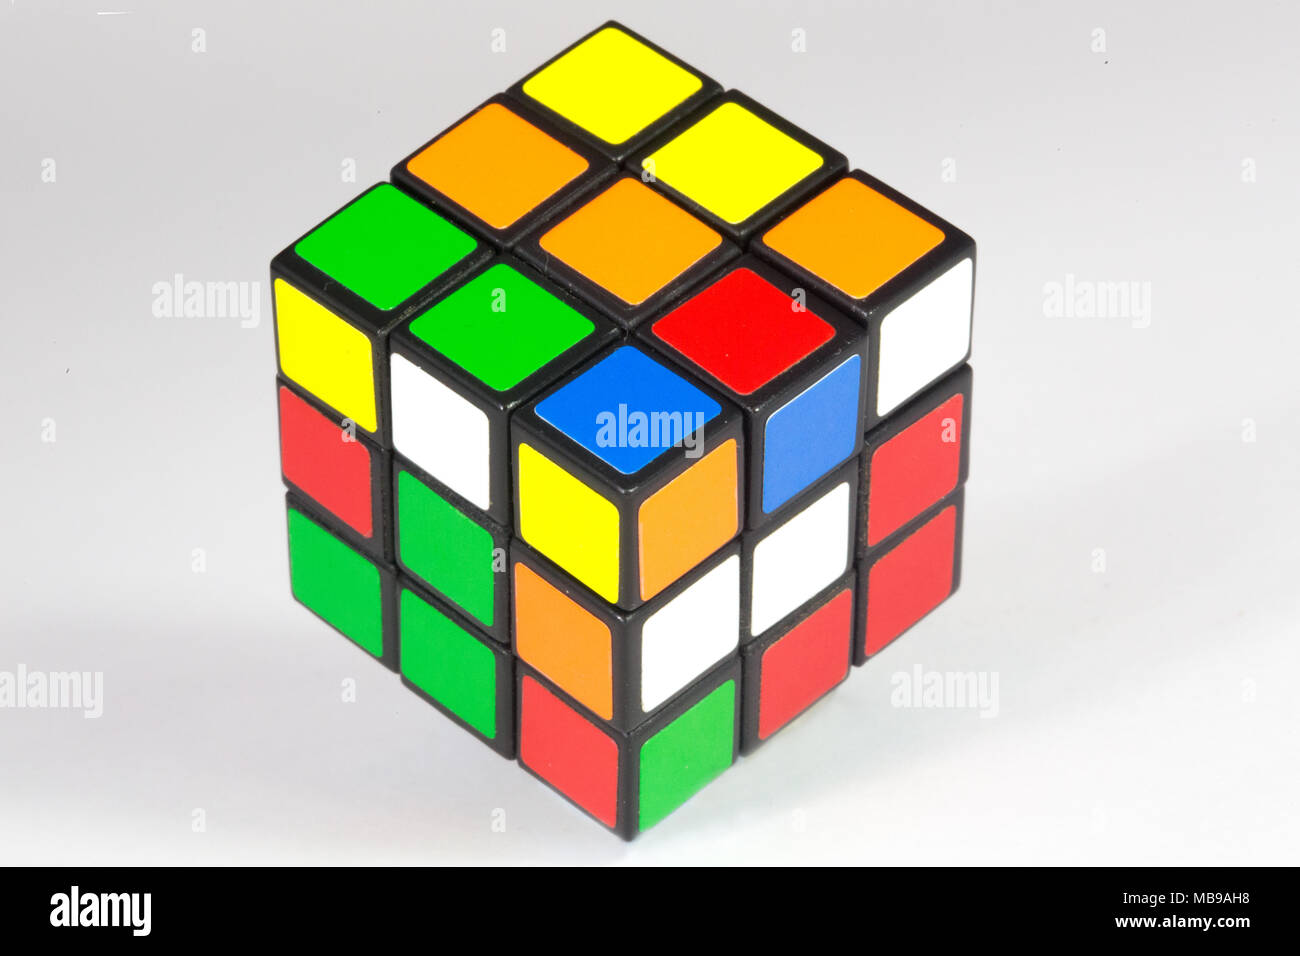 Erno Rubik Stockfotos und -bilder Kaufen - Alamy